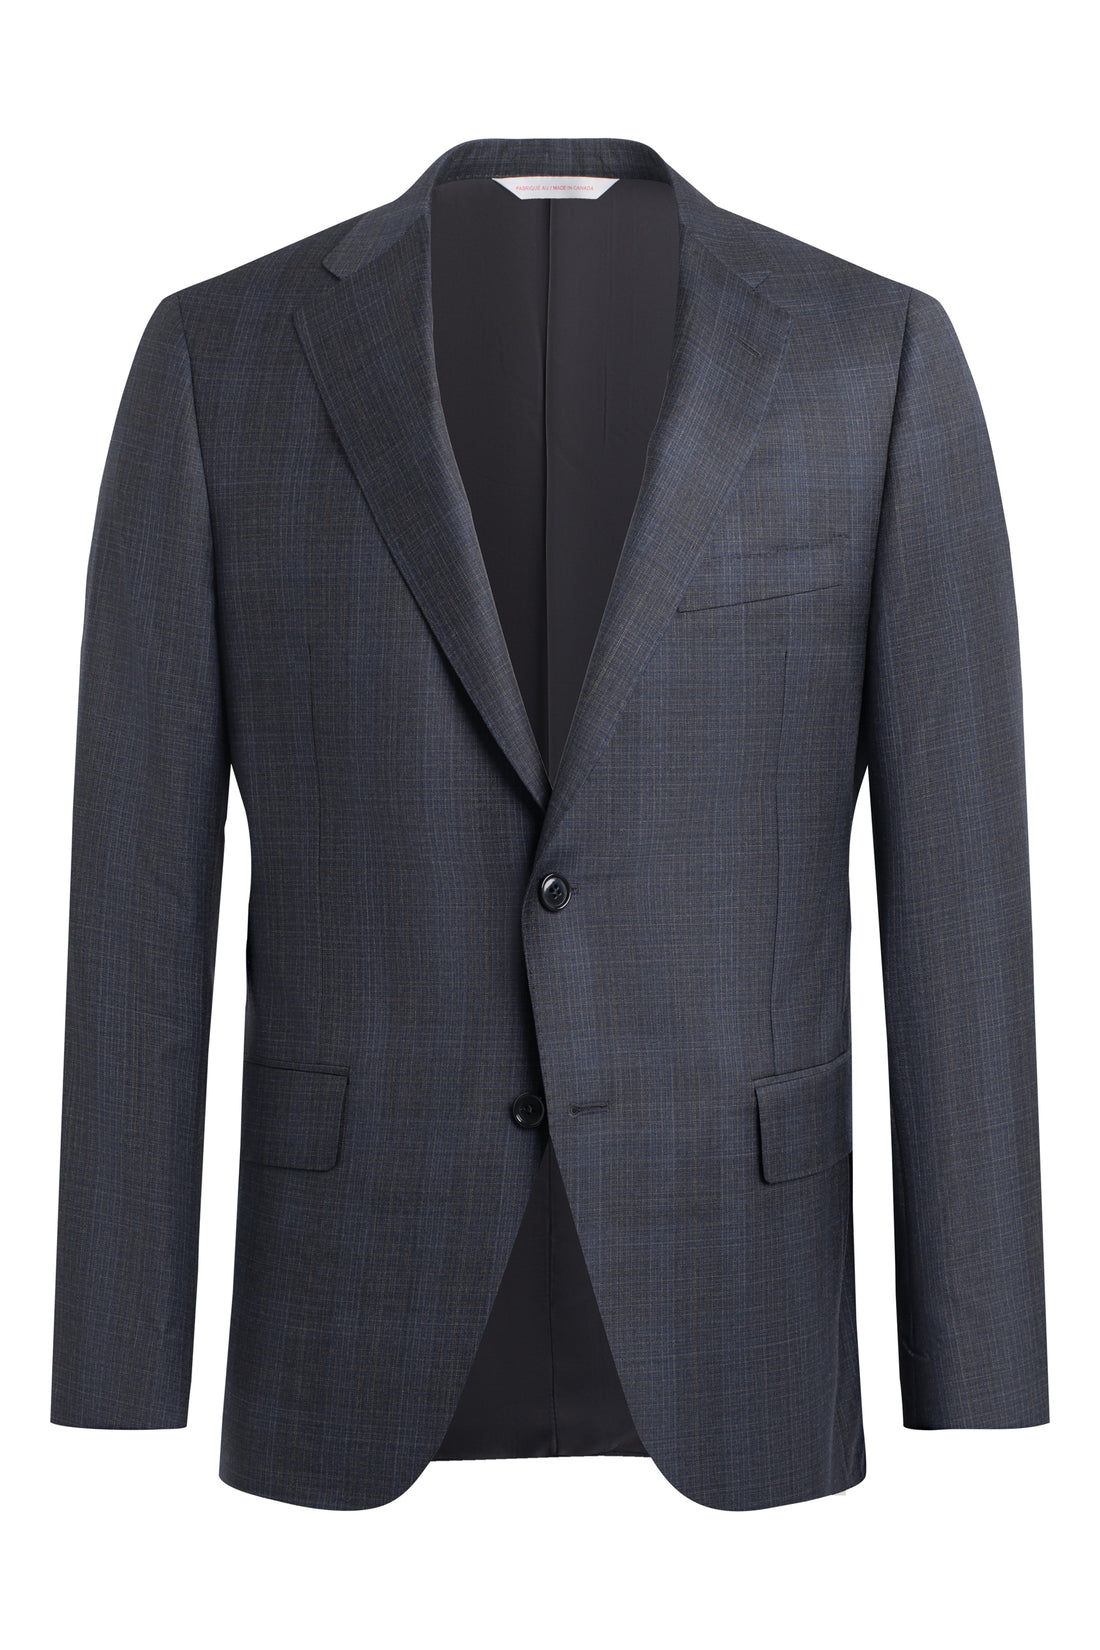 Charcoal-Blue Graph Check Suit jacket front